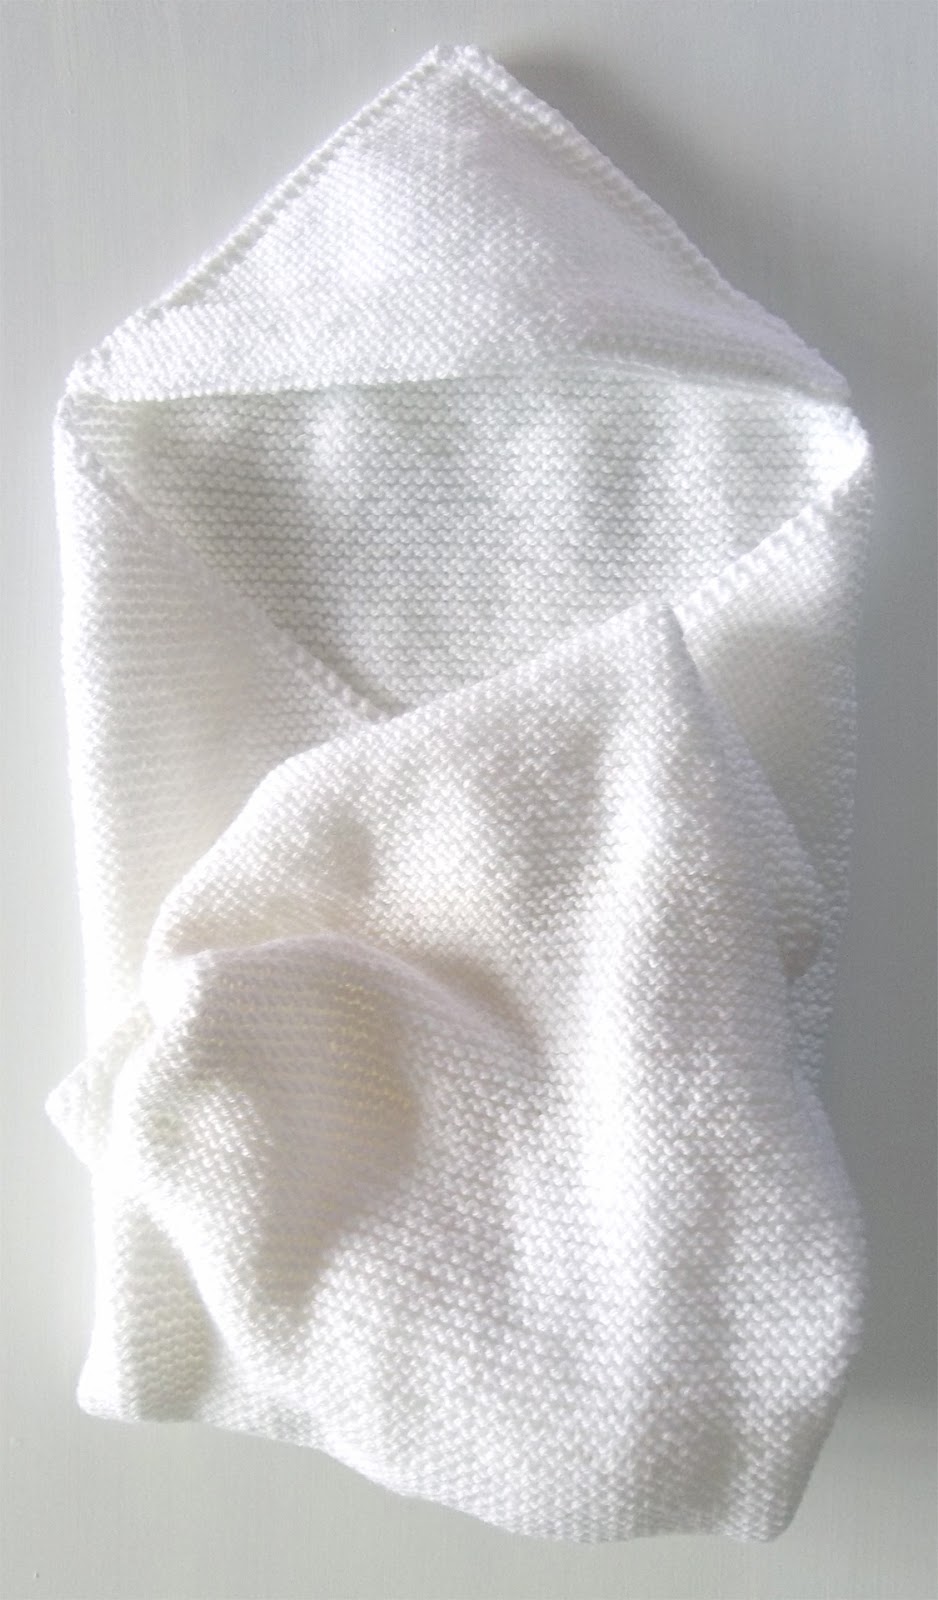 Hooded Baby Blanket (knit) Hooded Baby Blanket (knit) Knit blanketandHooded Baby Blanket (knit) Hooded Baby Blanket (knit) Knit blanketandhoodseparately SeeHooded Baby Blanket (knit) Hooded Baby Blanket (knit) Knit blanketandHooded Baby Blanket (knit) Hooded Baby Blanket (knit) Knit blanketandhoodseparately SeeHooded Seed Stitch Baby Blanket #10537ADfor a newerHooded Baby Blanket (knit) Hooded Baby Blanket (knit) Knit blanketandHooded Baby Blanket (knit) Hooded Baby Blanket (knit) Knit blanketandhoodseparately SeeHooded Baby Blanket (knit) Hooded Baby Blanket (knit) Knit blanketandHooded Baby Blanket (knit) Hooded Baby Blanket (knit) Knit blanketandhoodseparately SeeHooded Seed Stitch Baby Blanket #10537ADfor a newerknitversion. SeeHooded Baby Blanket (knit) Hooded Baby Blanket (knit) Knit blanketandHooded Baby Blanket (knit) Hooded Baby Blanket (knit) Knit blanketandhoodseparately SeeHooded Baby Blanket (knit) Hooded Baby Blanket (knit) Knit blanketandHooded Baby Blanket (knit) Hooded Baby Blanket (knit) Knit blanketandhoodseparately SeeHooded Seed Stitch Baby Blanket #10537ADfor a newerHooded Baby Blanket (knit) Hooded Baby Blanket (knit) Knit blanketandHooded Baby Blanket (knit) Hooded Baby Blanket (knit) Knit blanketandhoodseparately SeeHooded Baby Blanket (knit) Hooded Baby Blanket (knit) Knit blanketandHooded Baby Blanket (knit) Hooded Baby Blanket (knit) Knit blanketandhoodseparately SeeHooded Seed Stitch Baby Blanket #10537ADfor a newerknitversion. SeeHooded Baby Blanket...